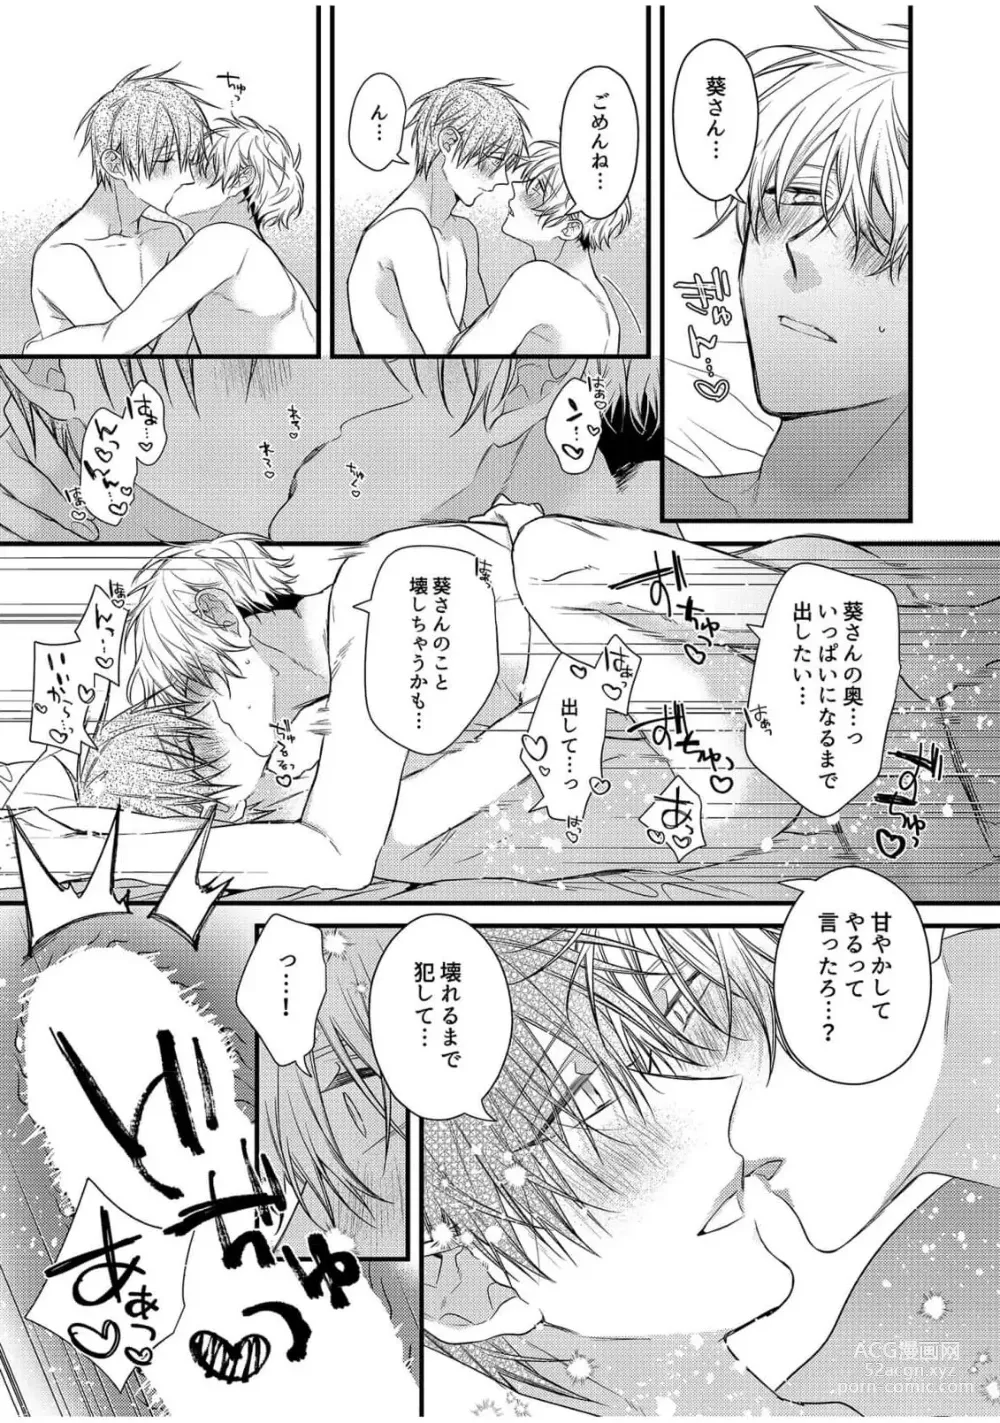 Page 211 of manga Ecchi wa shuu 7 Kibou Desu!